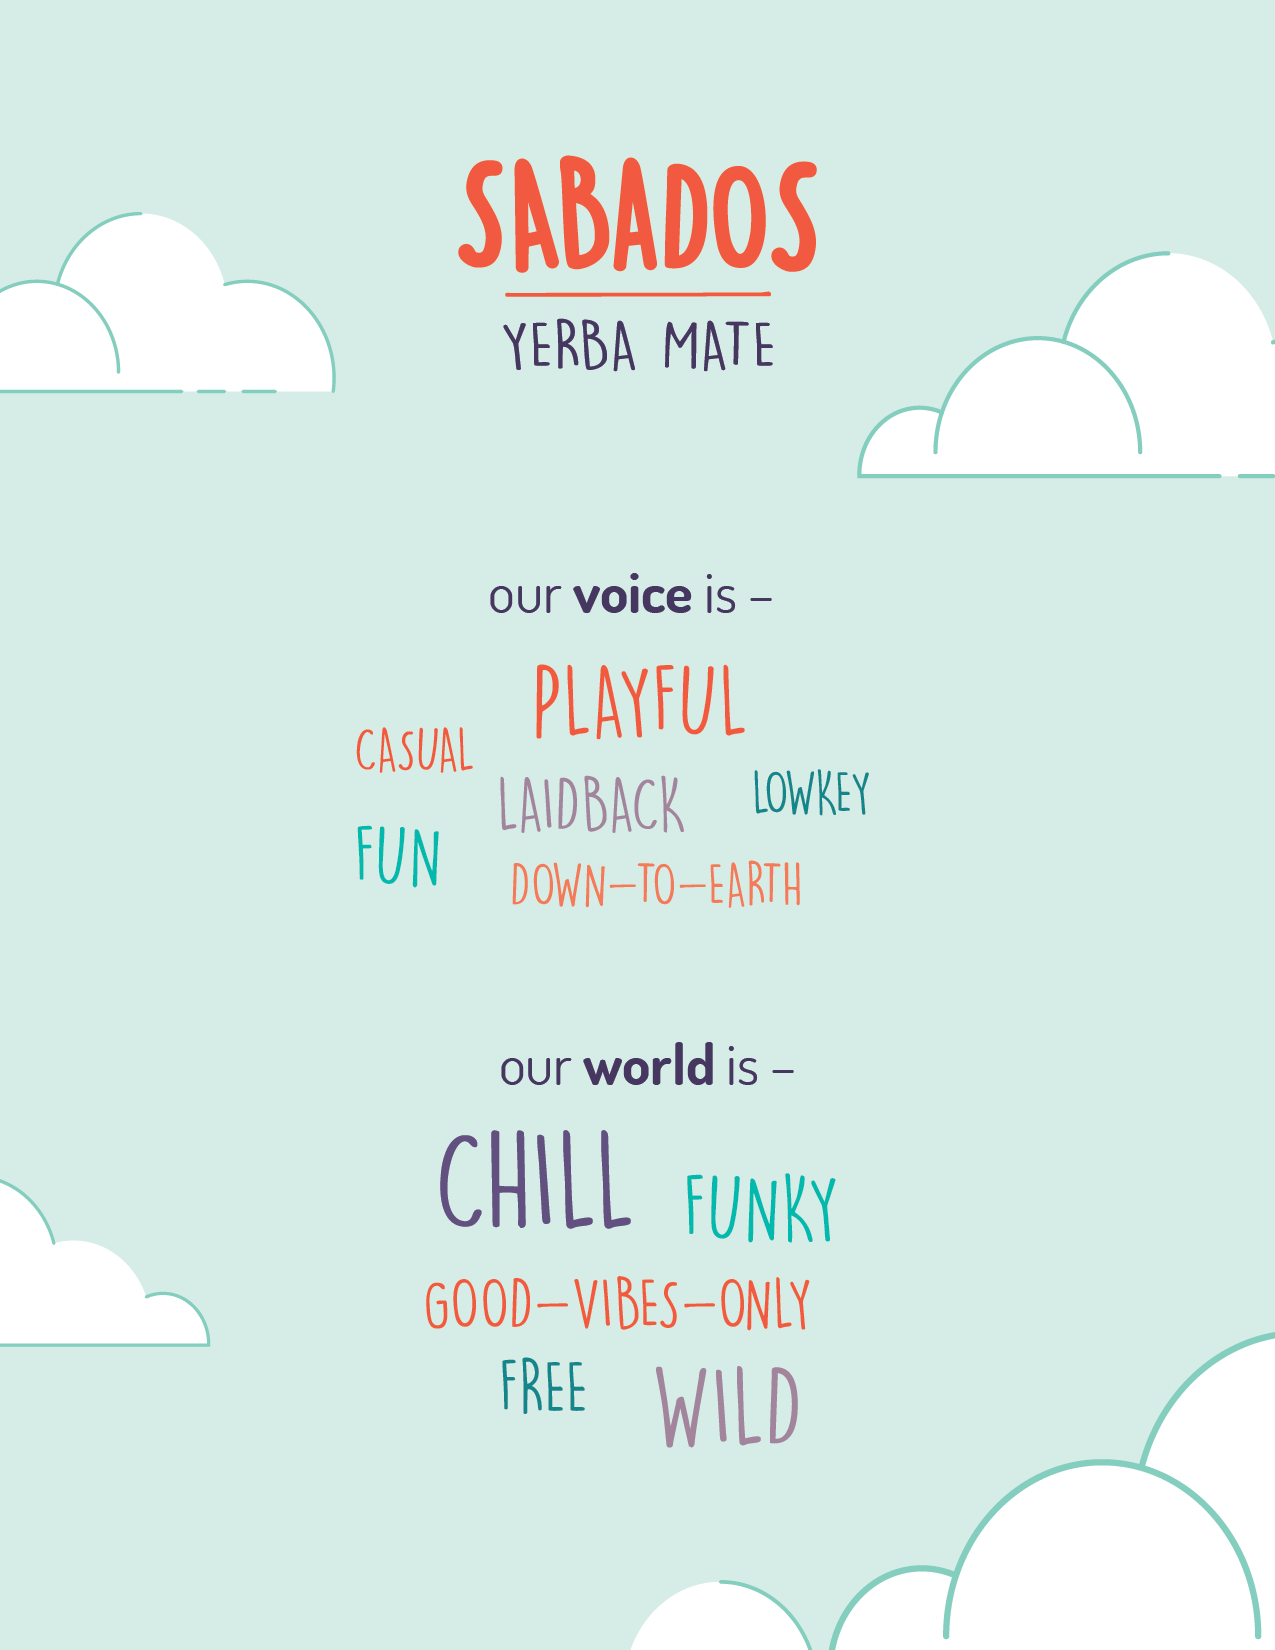 Sabados voice